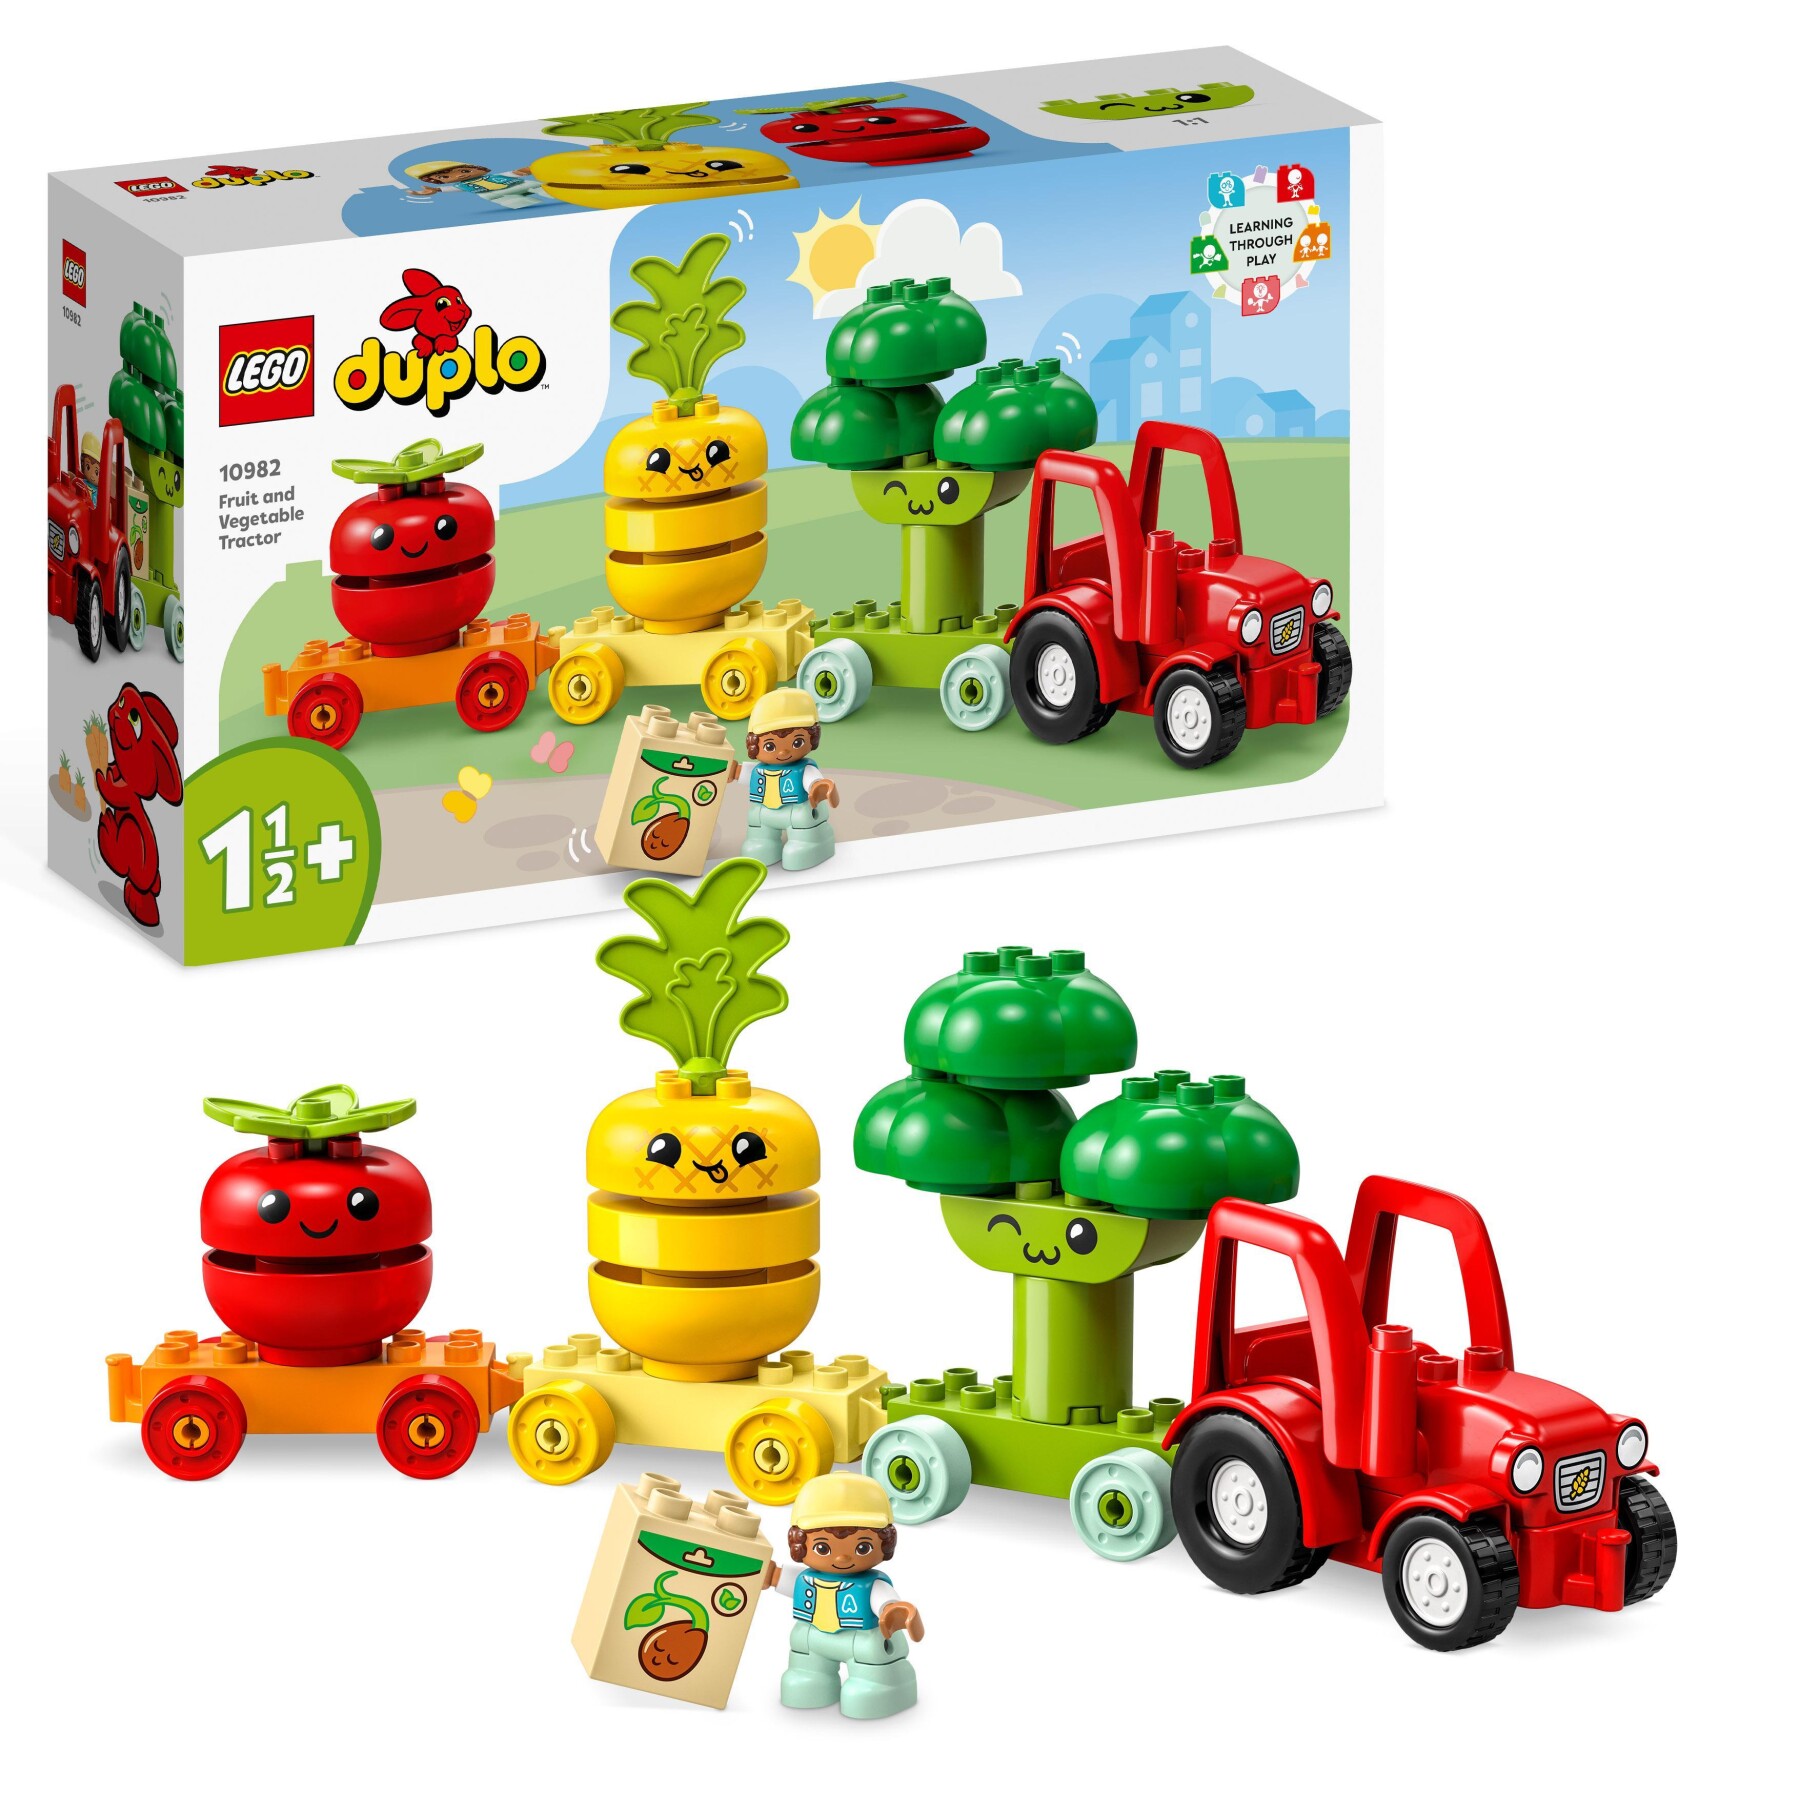 Lego duplo my first 10982 il trattore di frutta e verdura - impilabile educativo - LEGO DUPLO